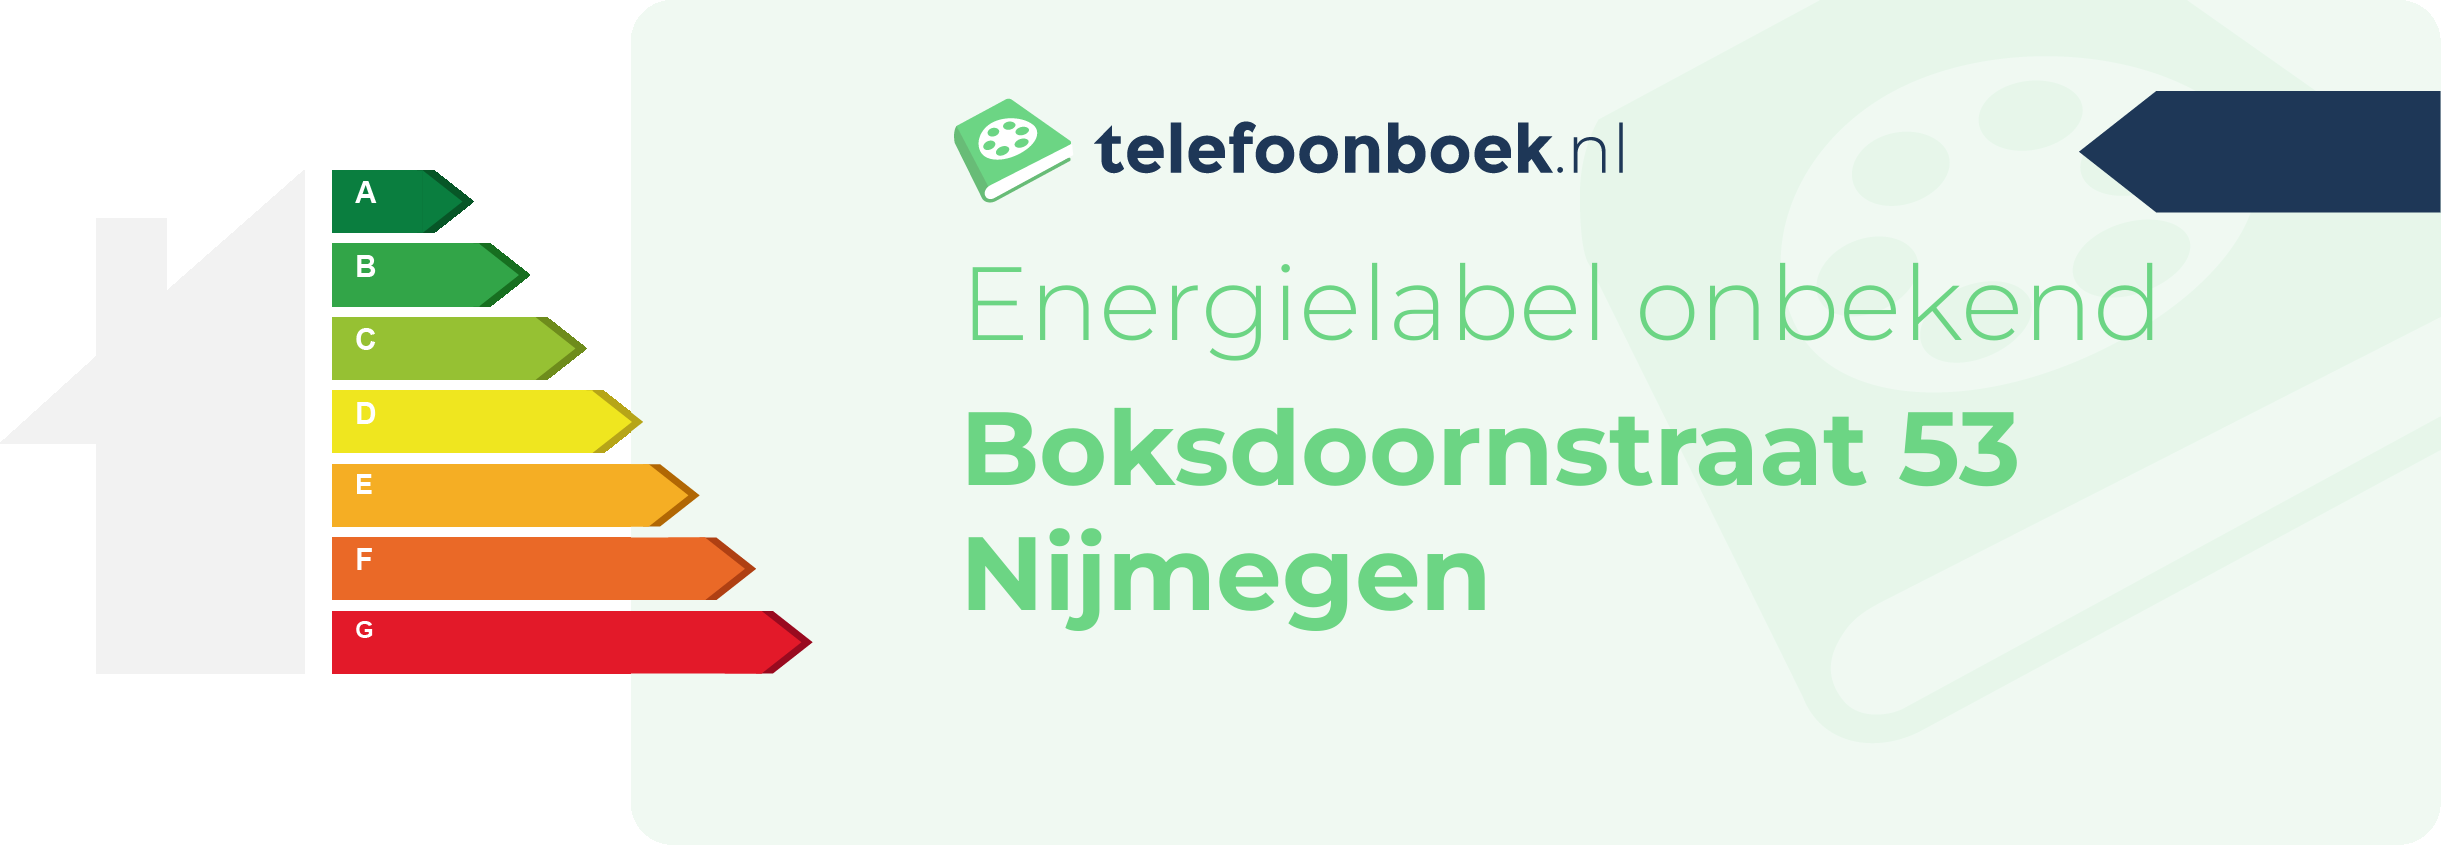 Energielabel Boksdoornstraat 53 Nijmegen